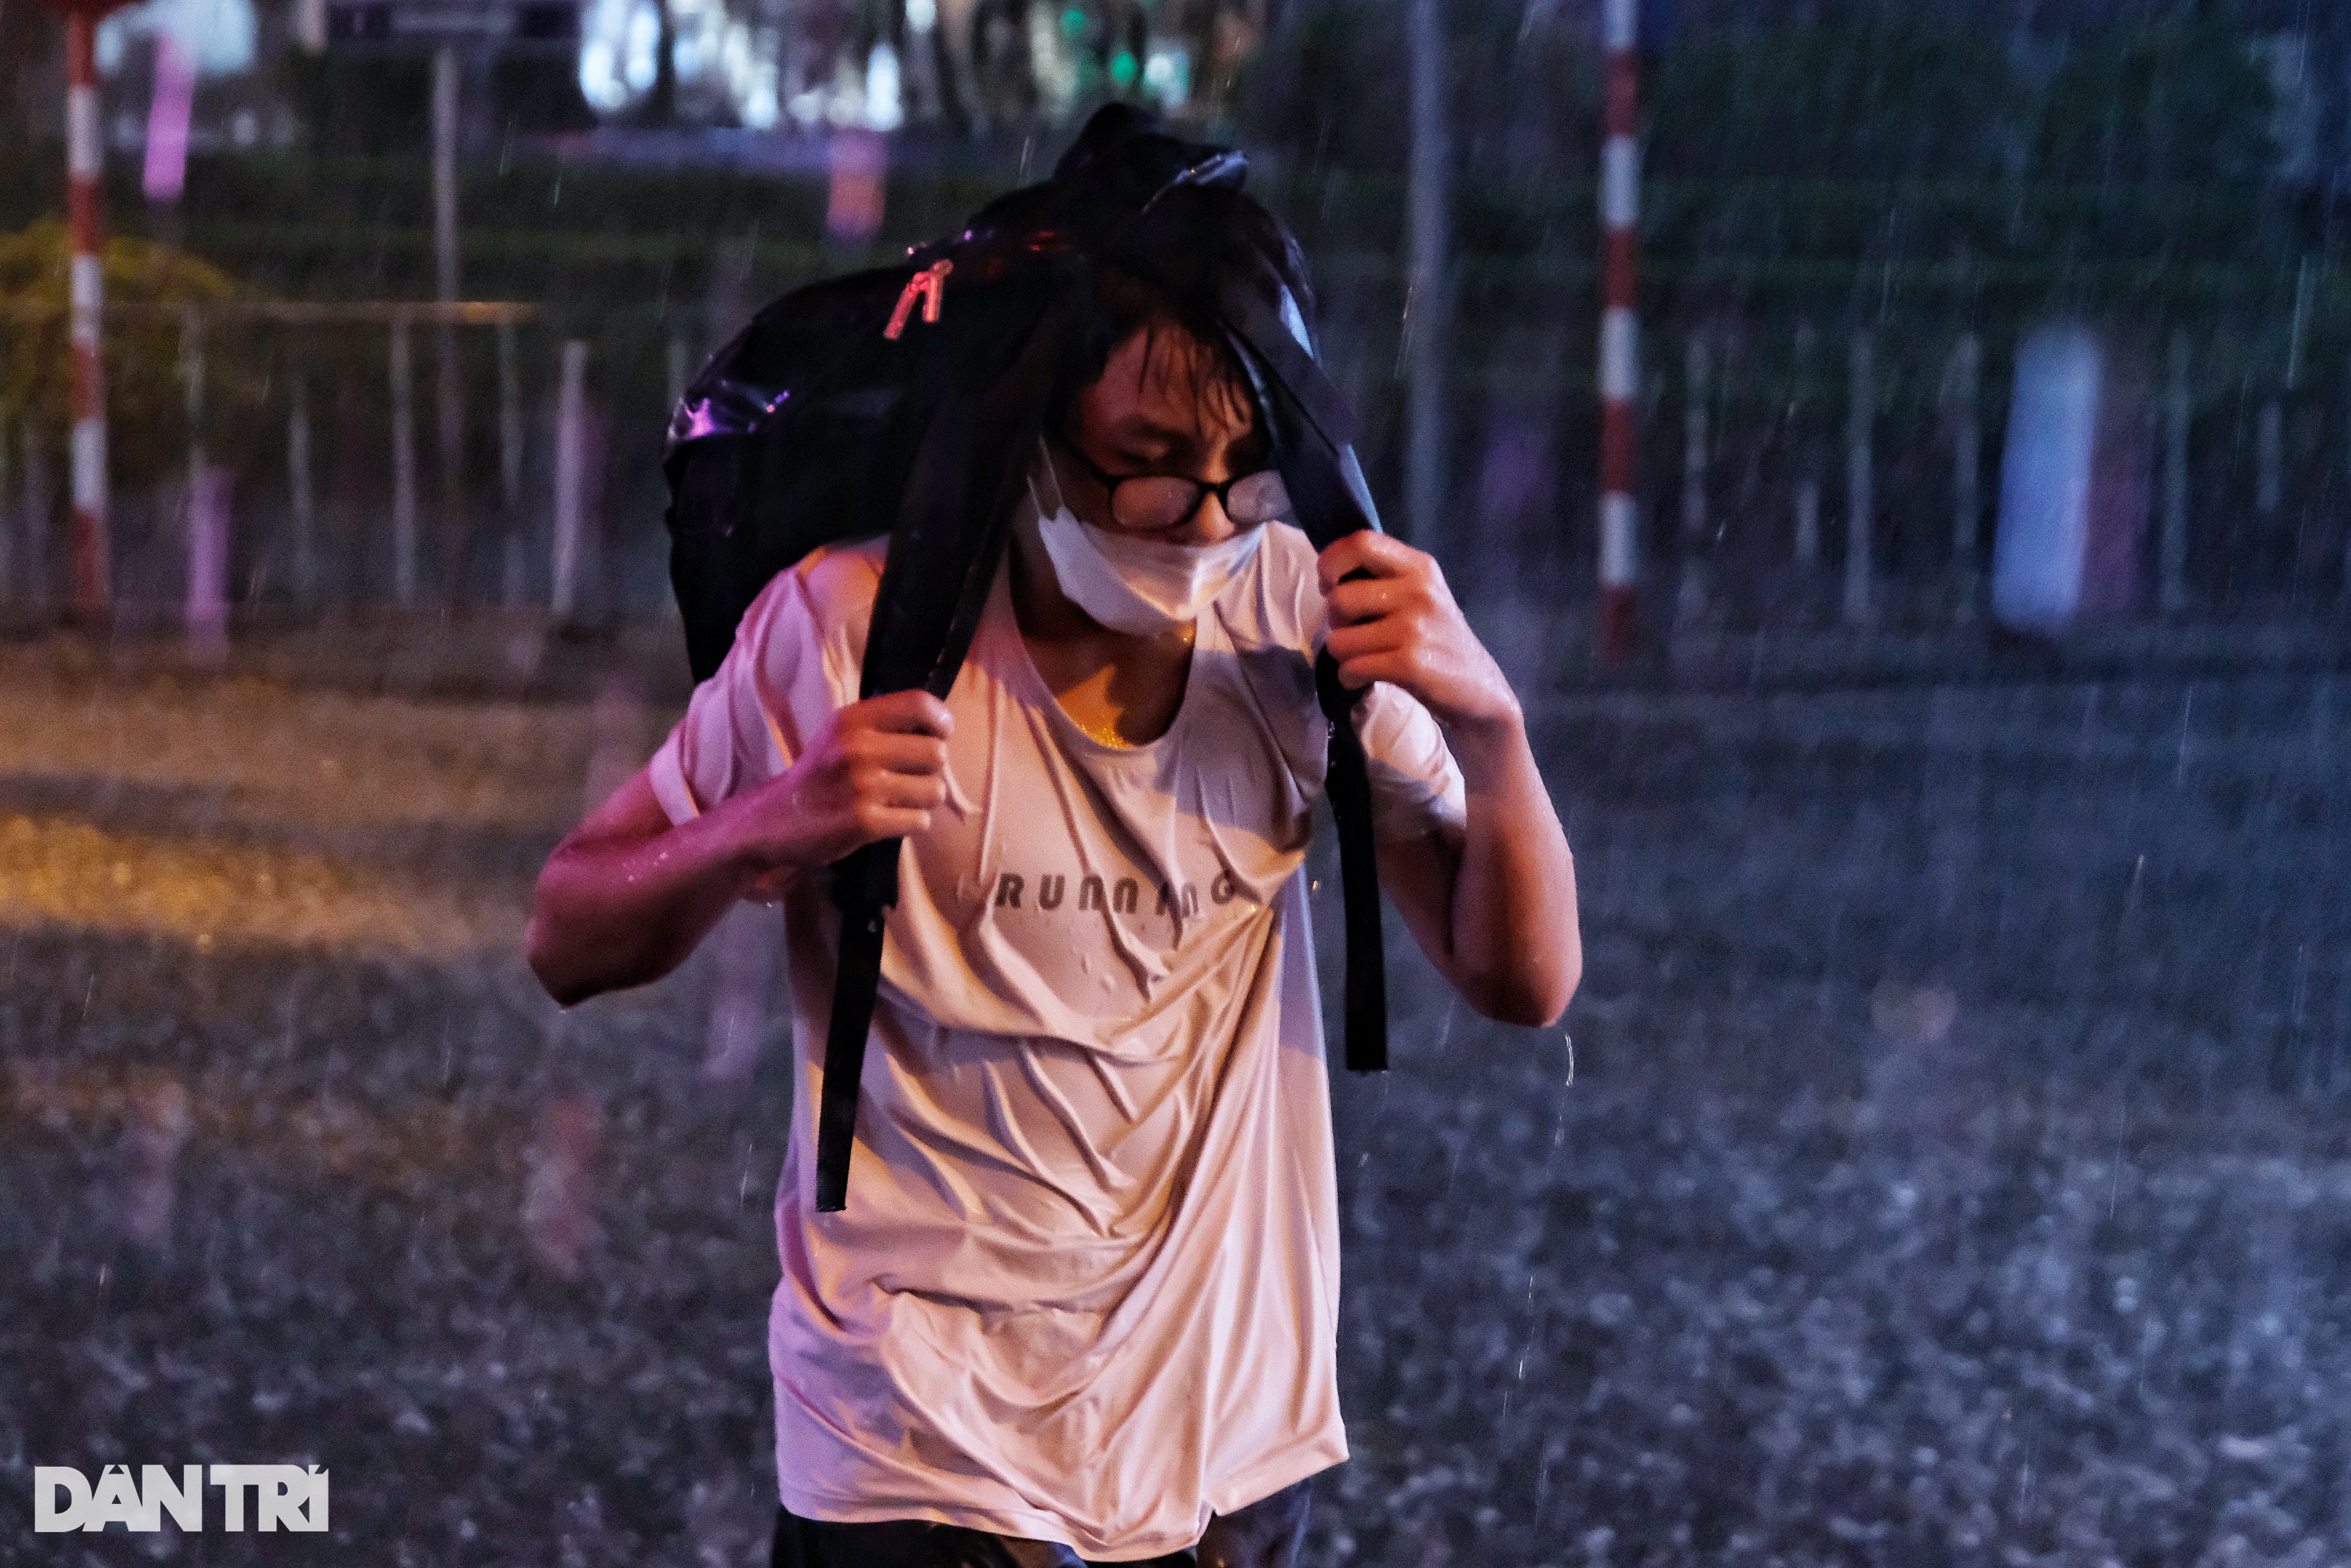 Cơn mưa lớn sầm sập đổ xuống, người Hà Nội chôn chân trên đường ngập - 4